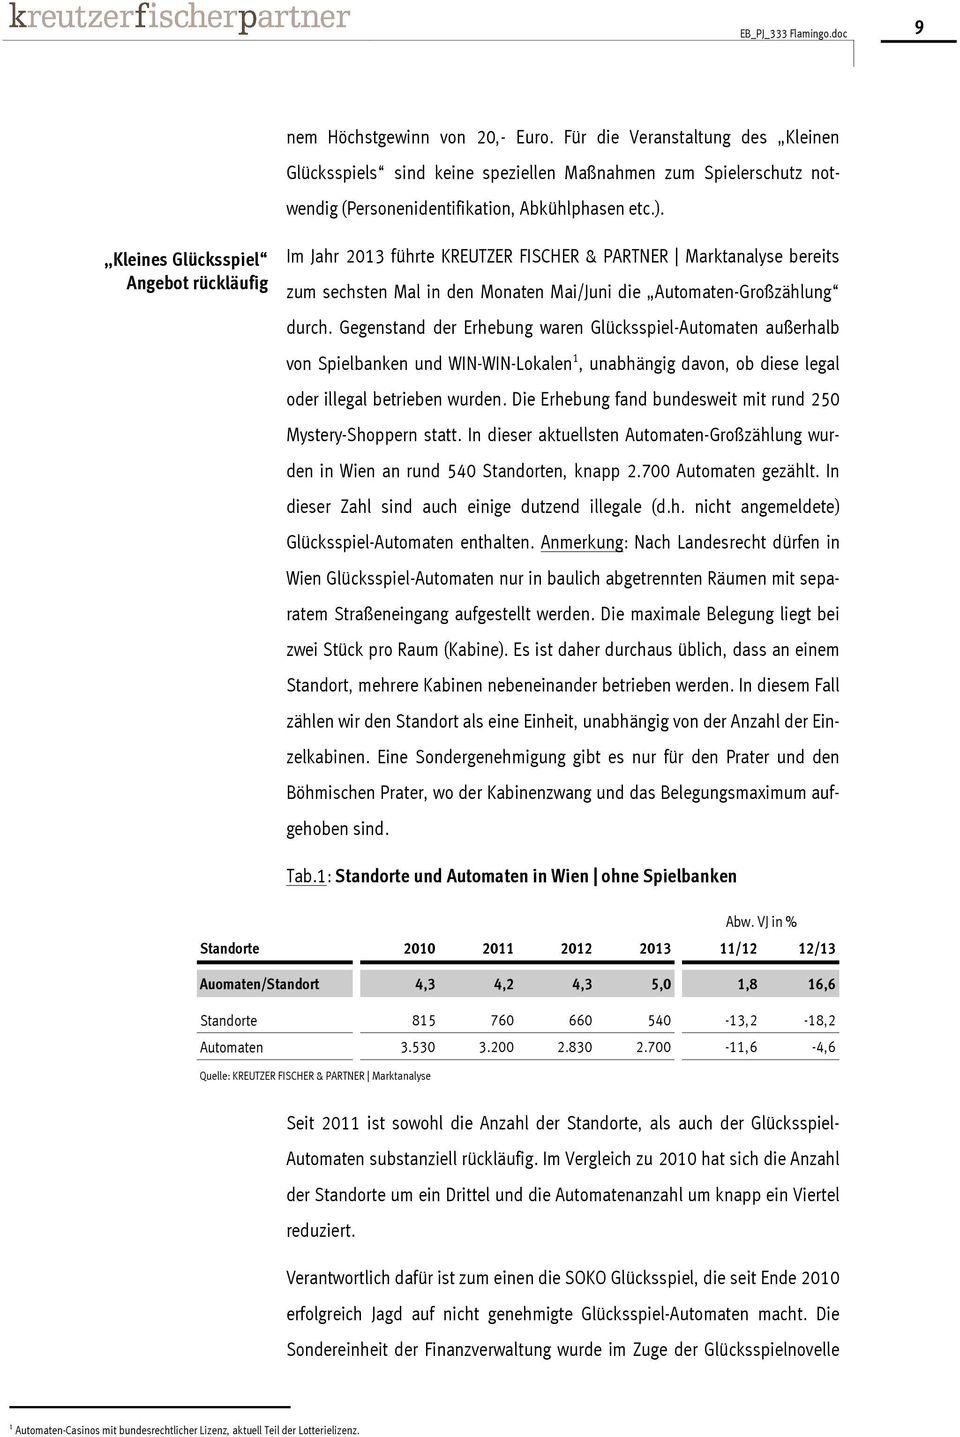 Kleines Glücksspiel Angebot rückläufig Im Jahr 2013 führte KREUTZER FISCHER & PARTNER Marktanalyse bereits zum sechsten Mal in den Monaten Mai/Juni die Automaten-Großzählung durch.